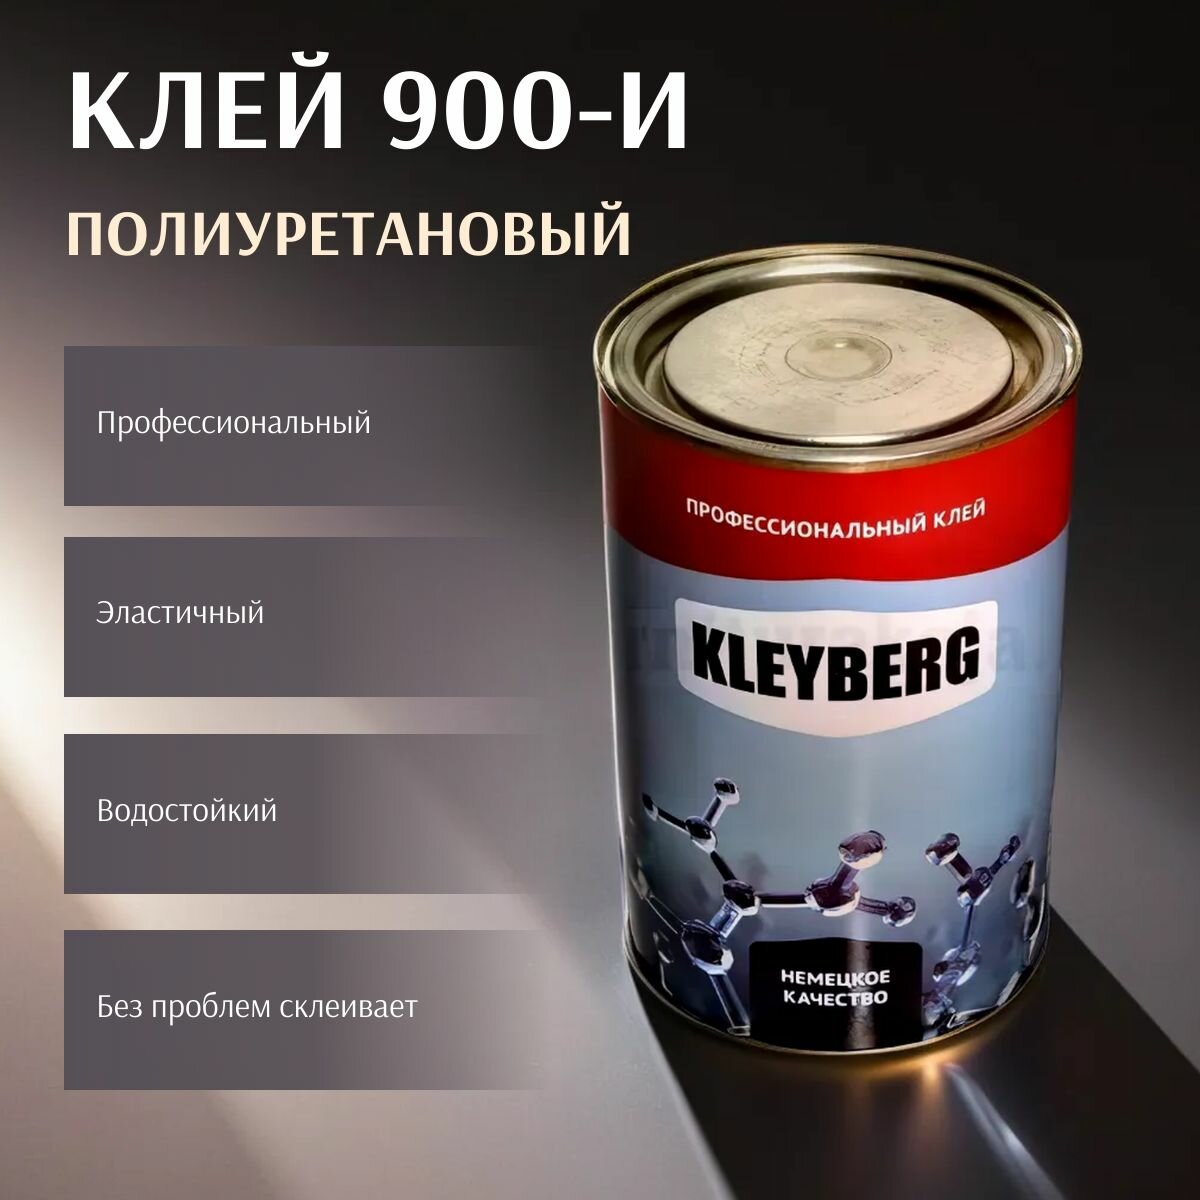 Клей Kleyberg Полиуретановый 900-И 1000 мл, 1 шт